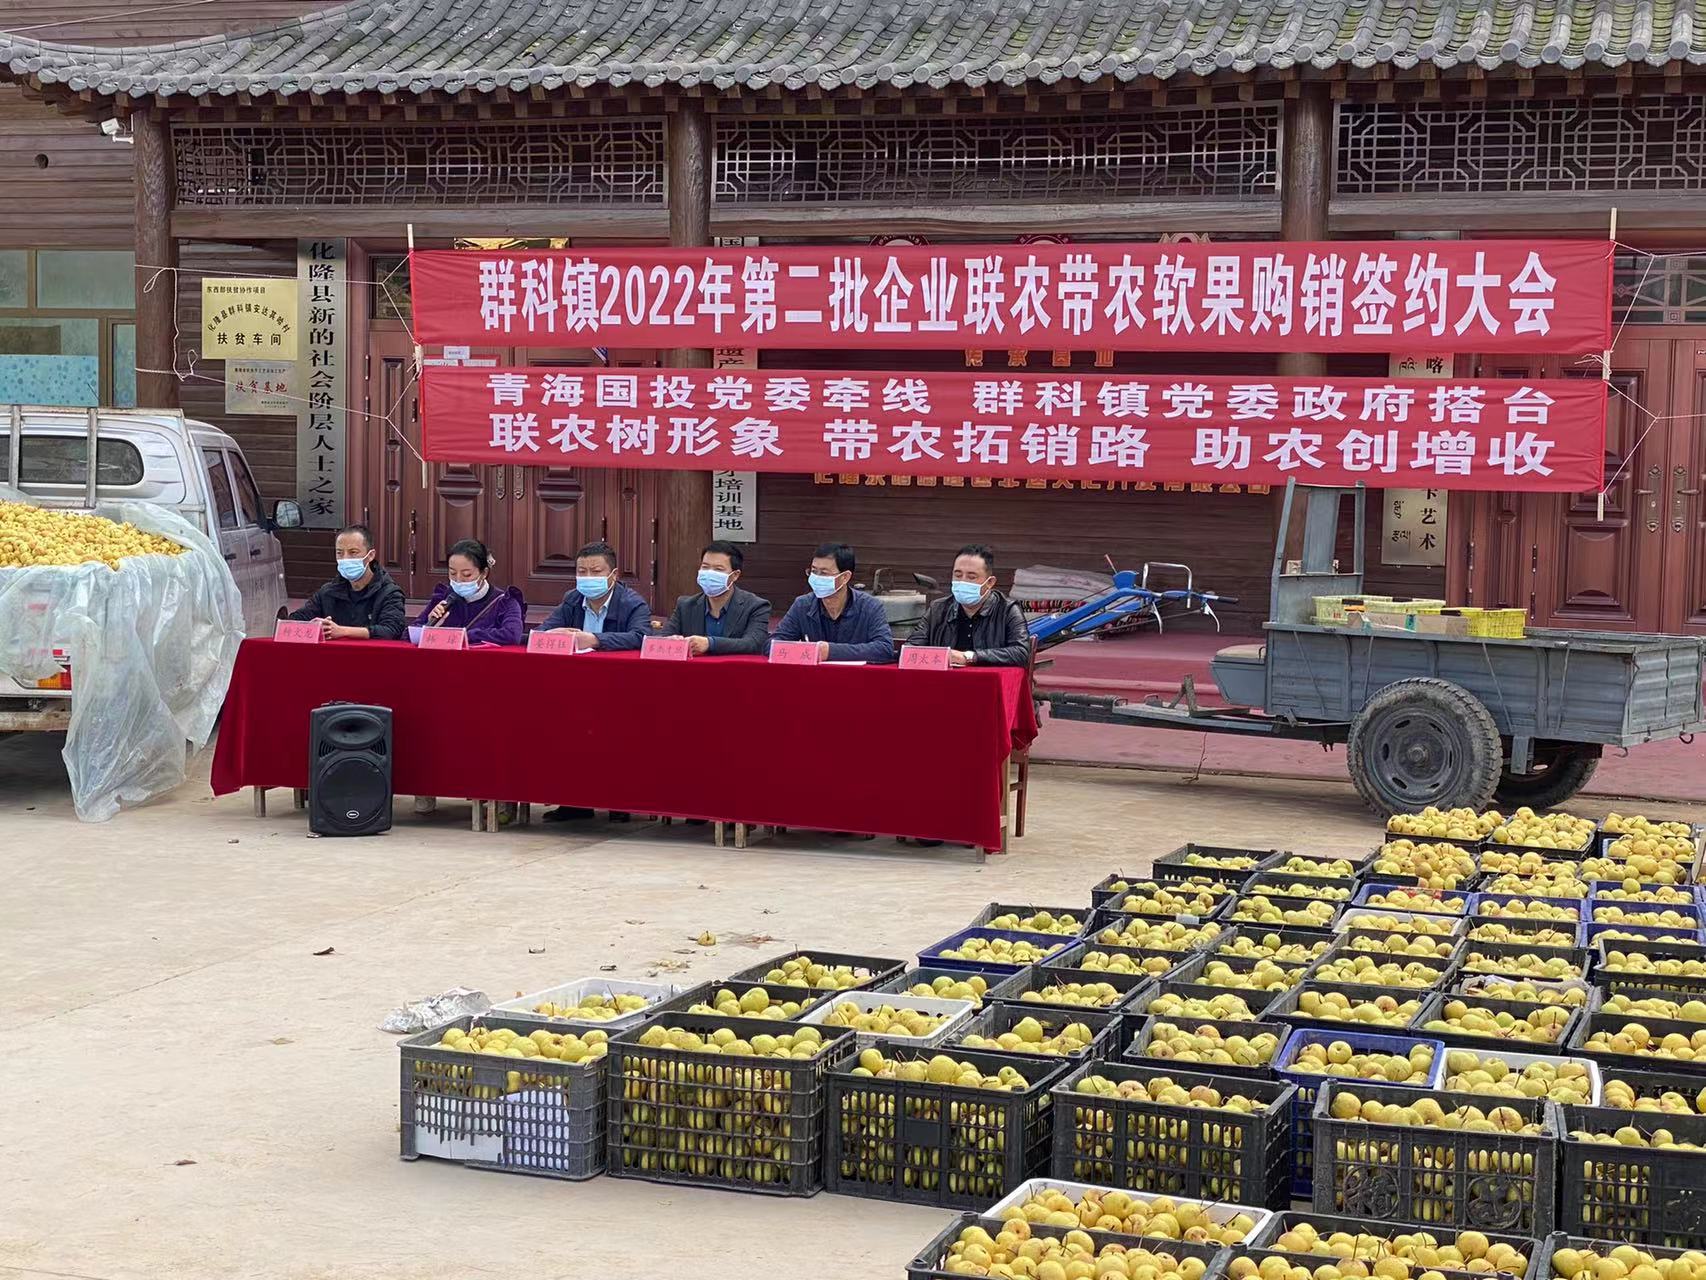 手机在线官网买球-腾讯指南驻乙沙二村工作队积极帮助解决农产品滞销